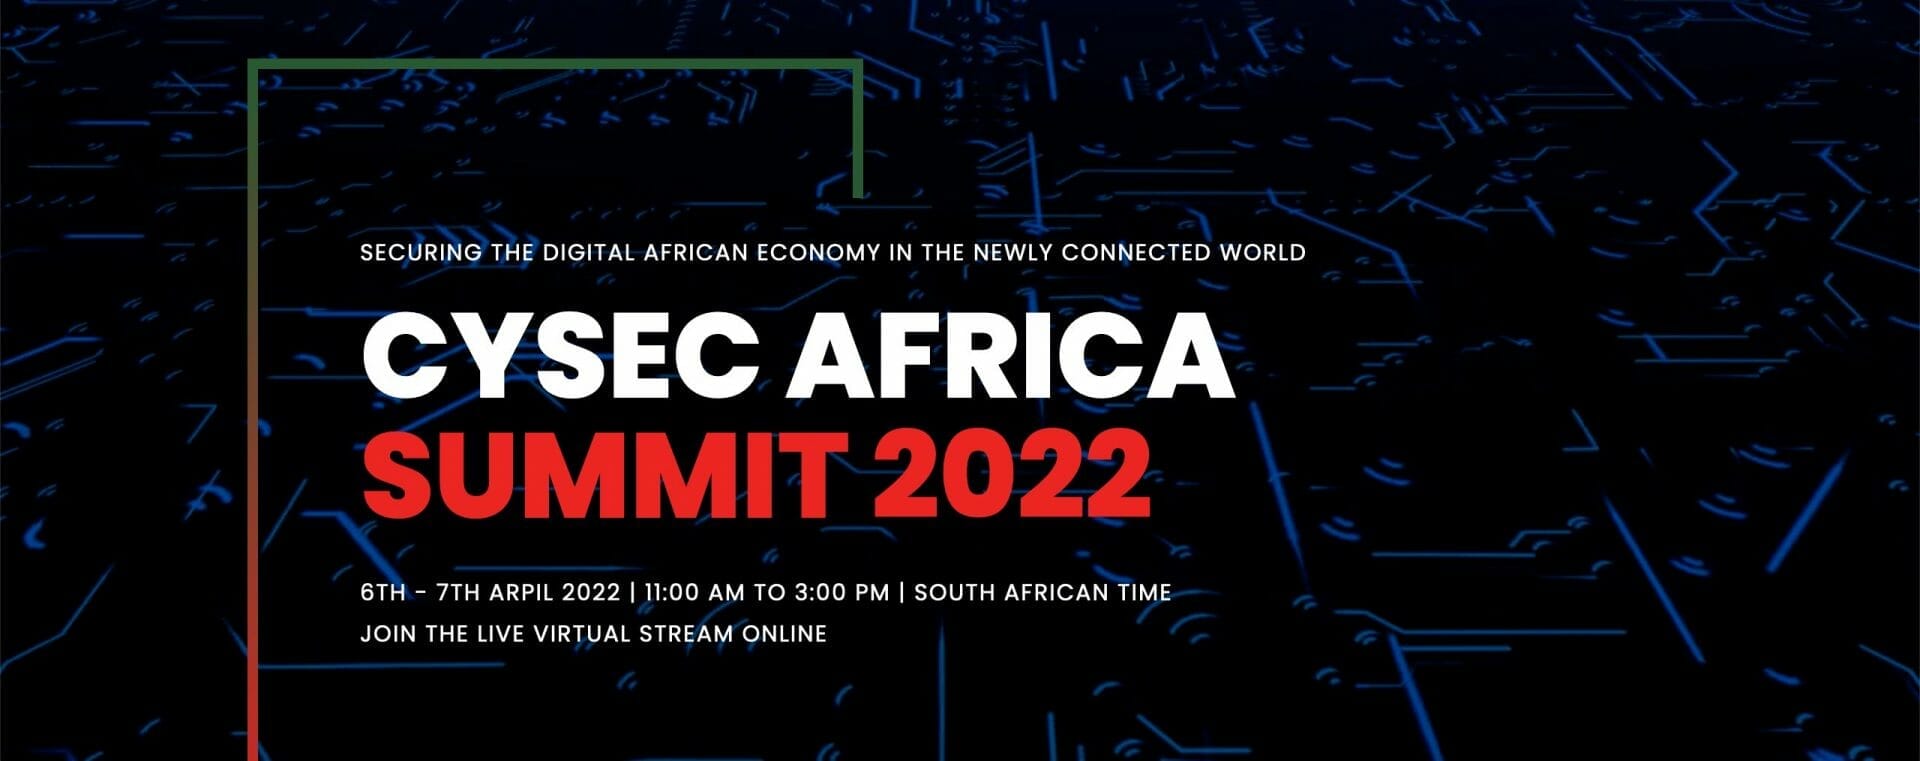 CySec Africa Summit 2022